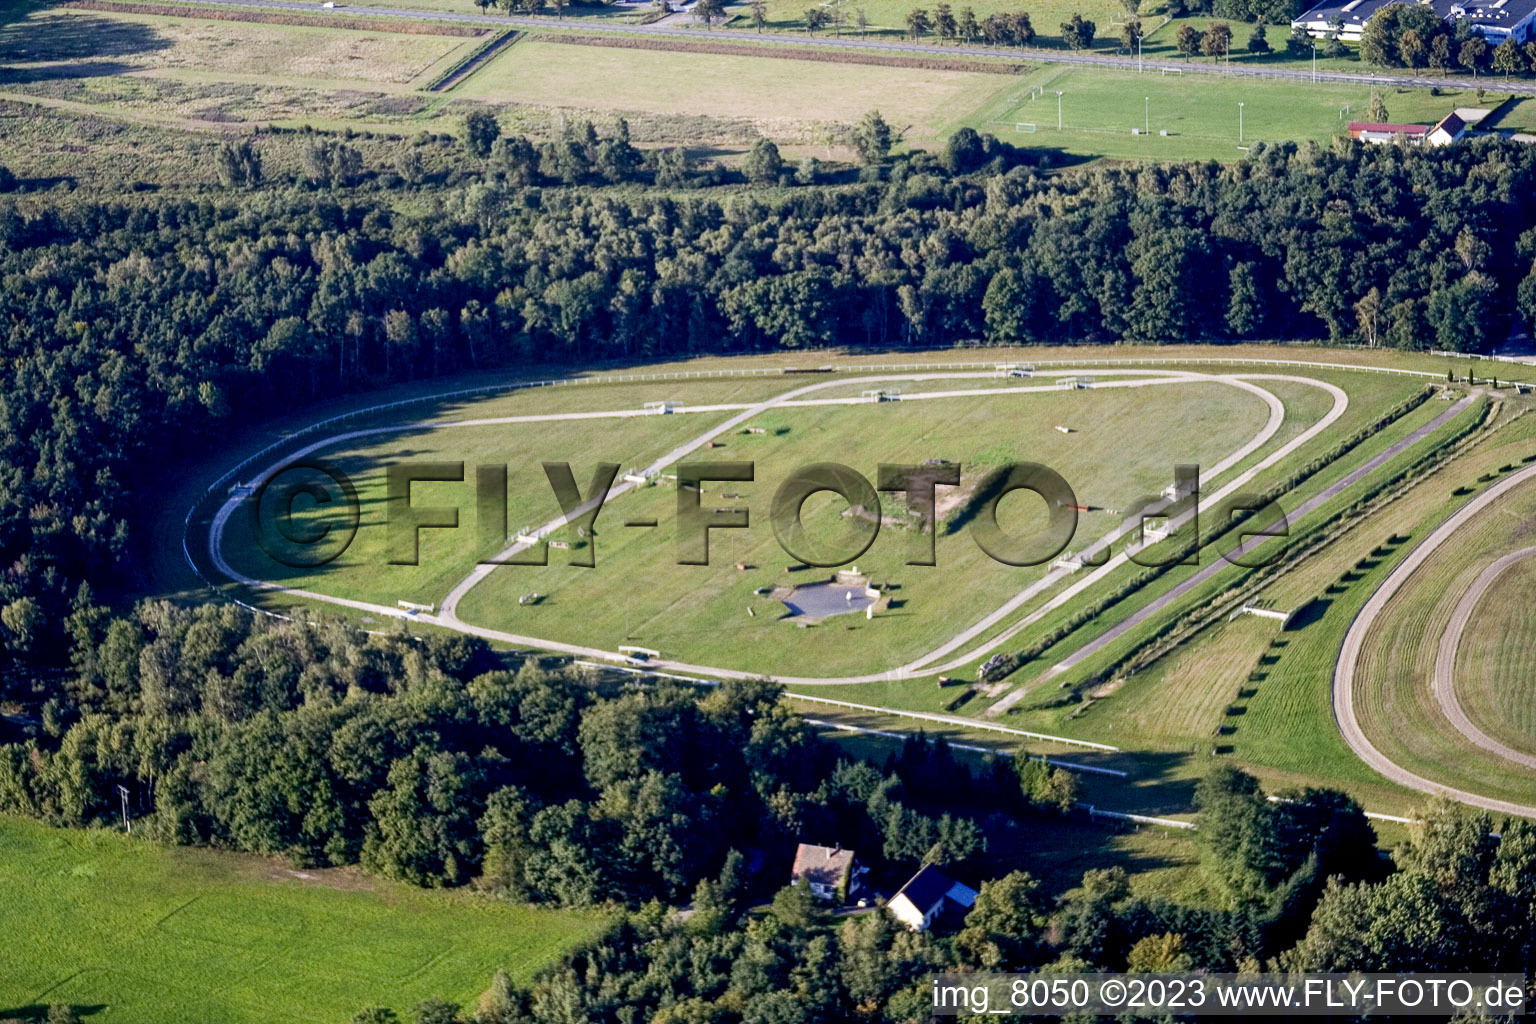 Vue aérienne de Hippodrome, Altenstadt près de Wissembourg à Altenstadt dans le département Bas Rhin, France